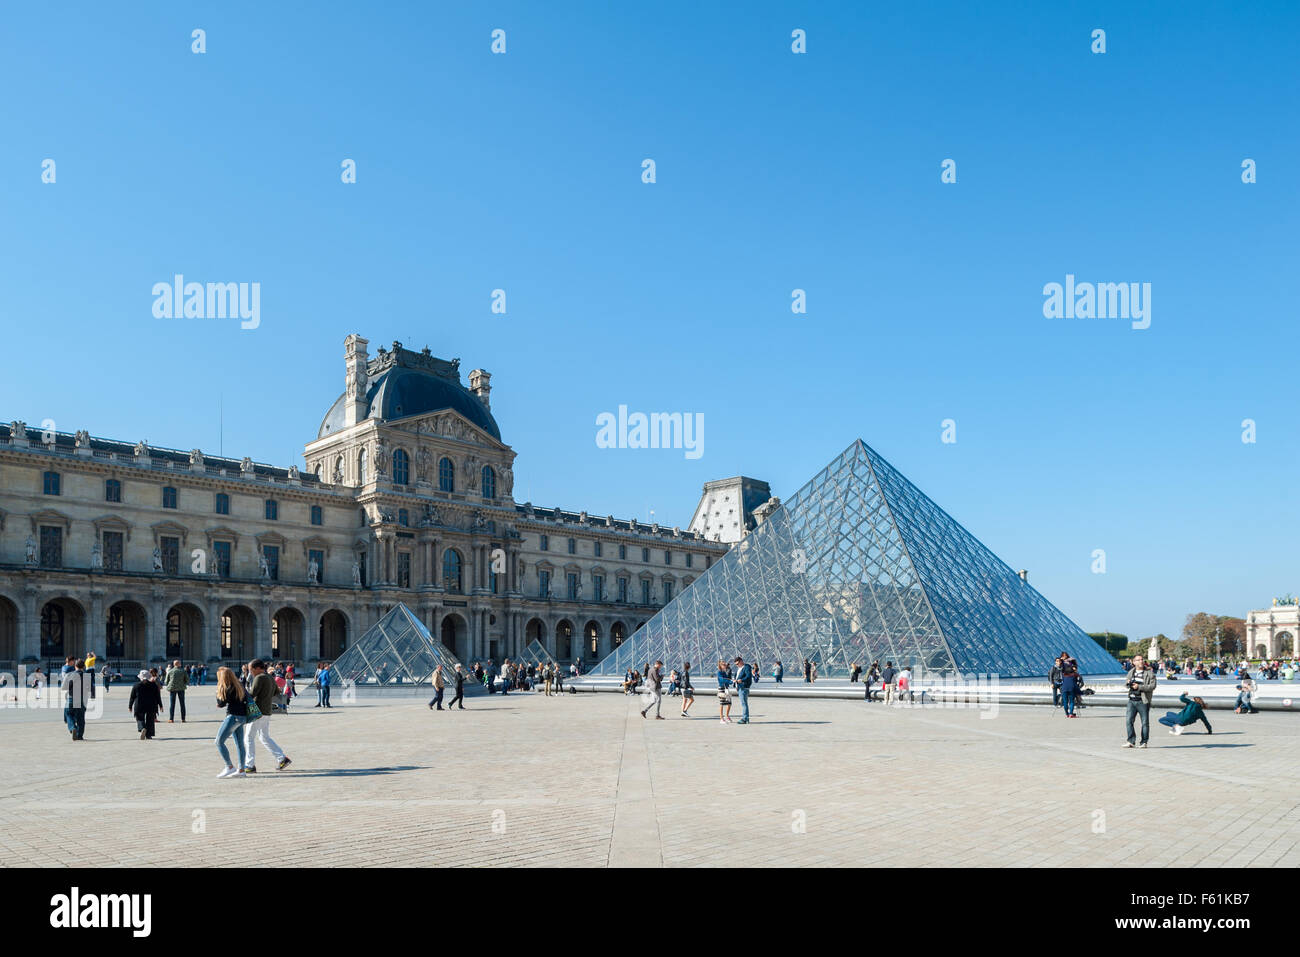 France, Paris, la pyramide du Louvre - cour Napoléon Banque D'Images